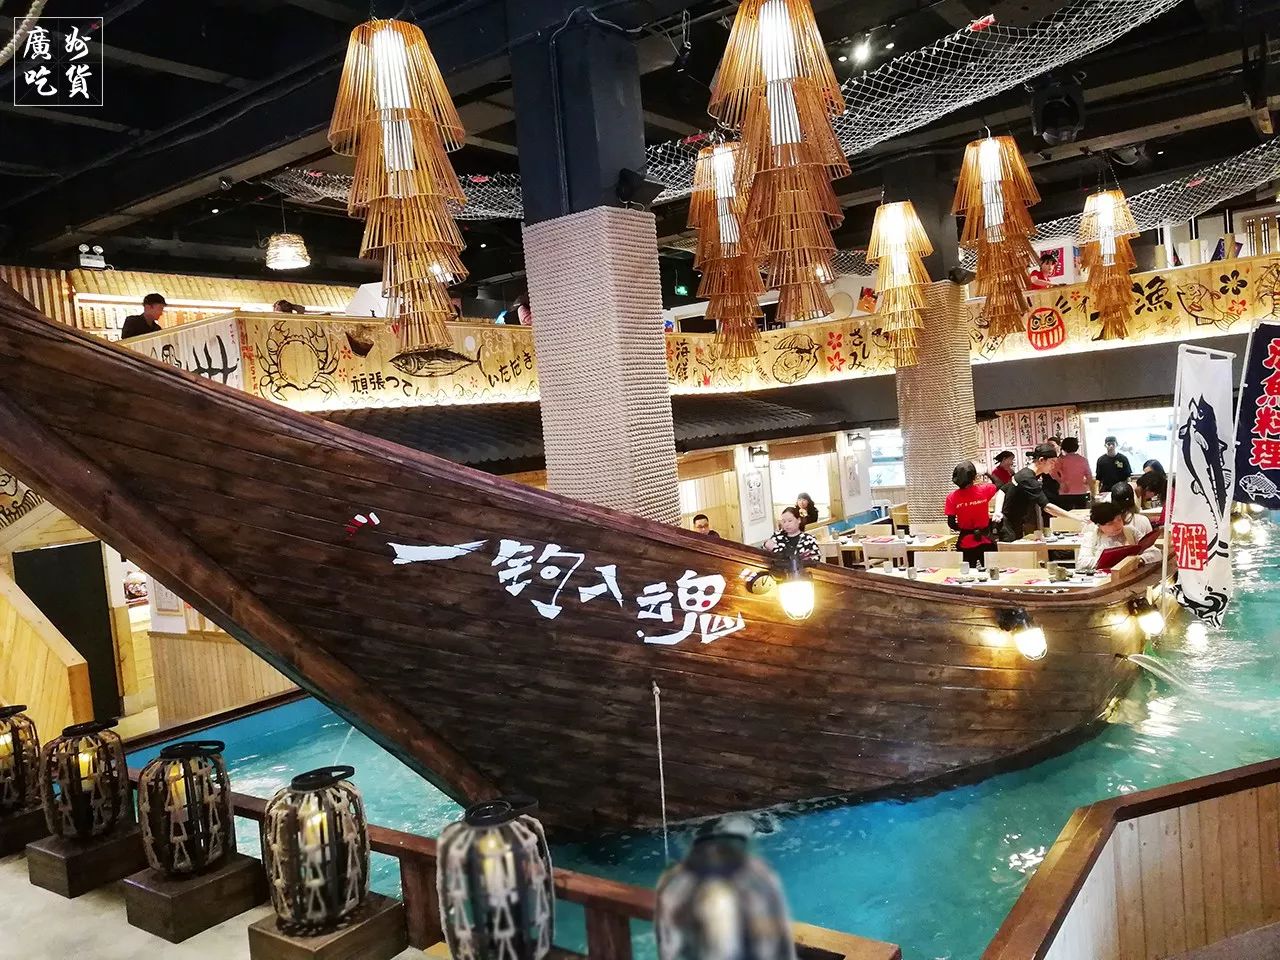 把大海和渔船搬入室内的餐厅,全广州挑不出第二家!